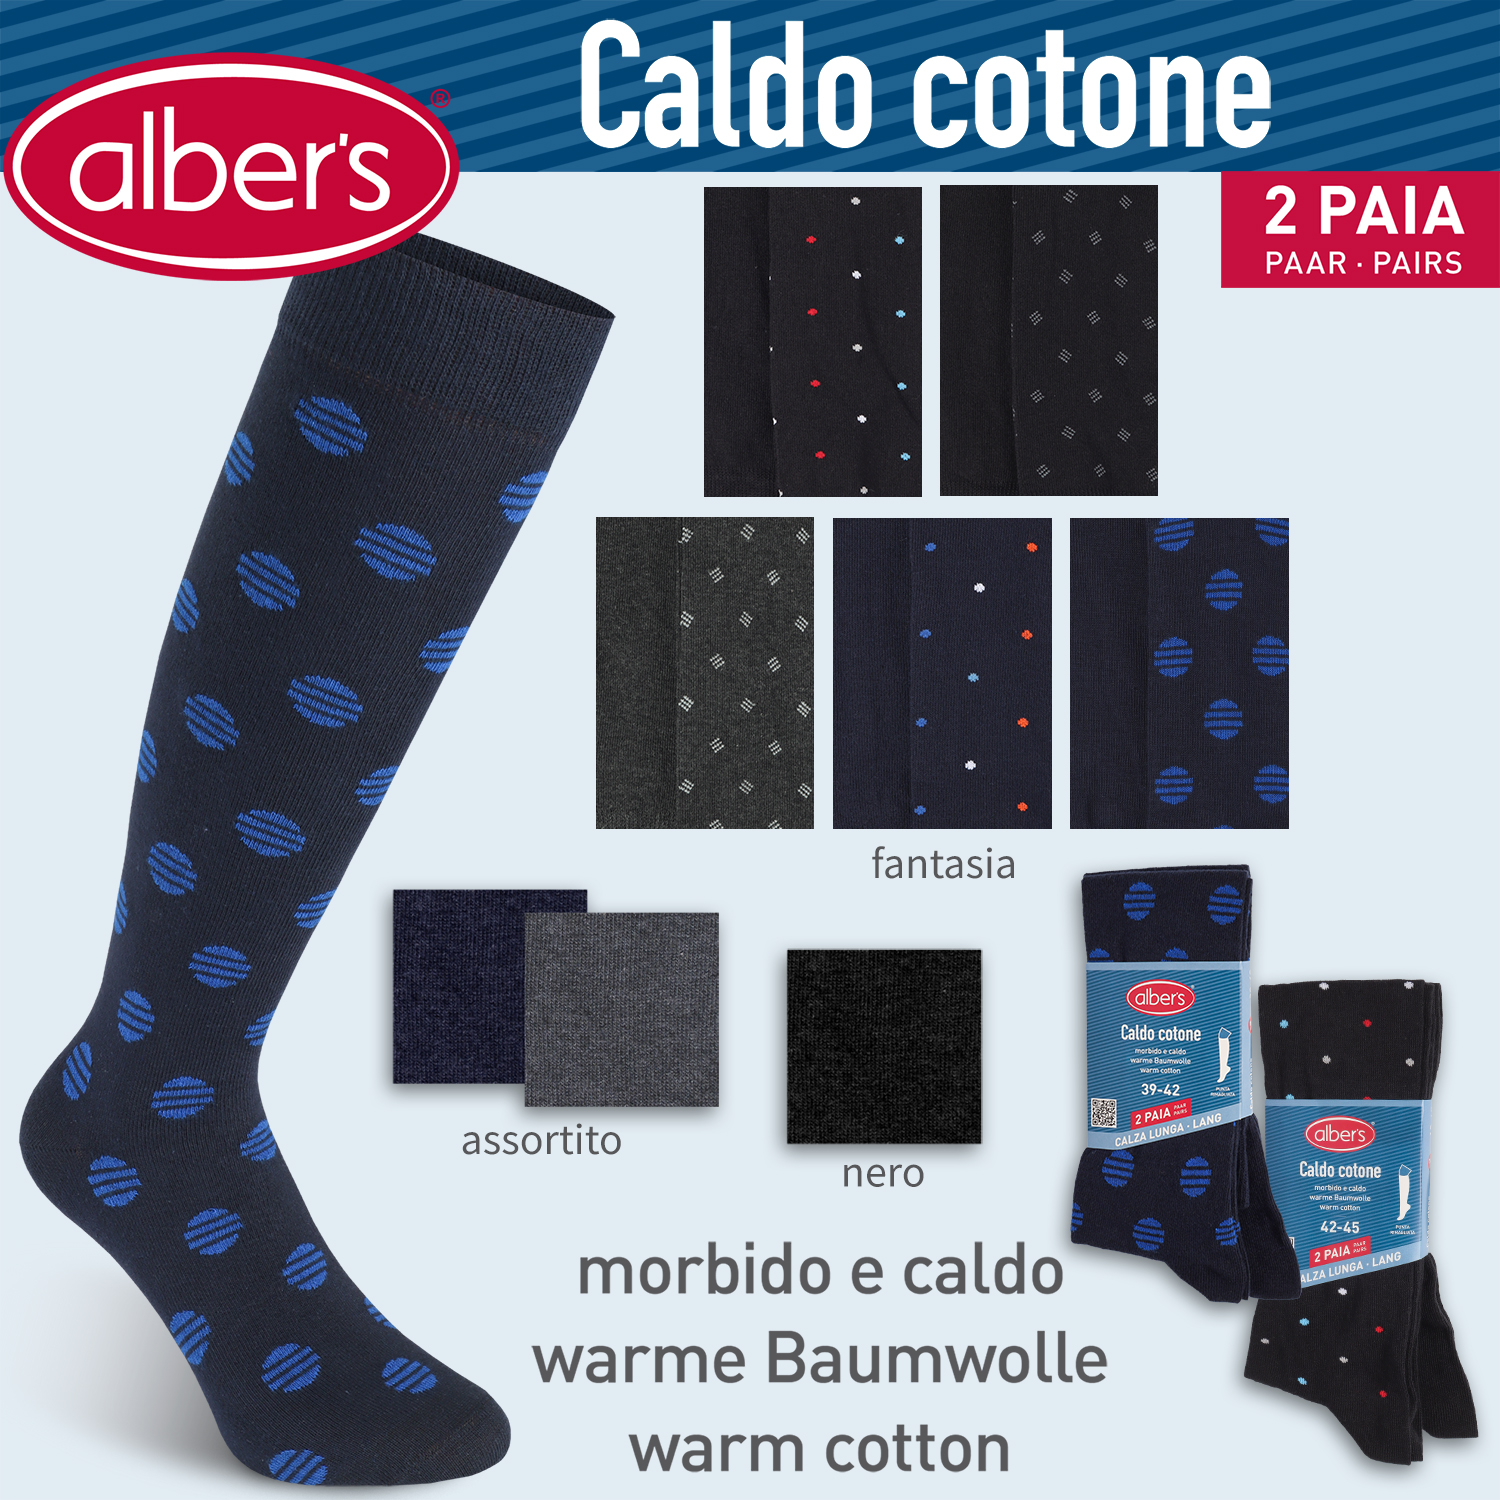 Albers (596) Sock Caldo cotone 2P